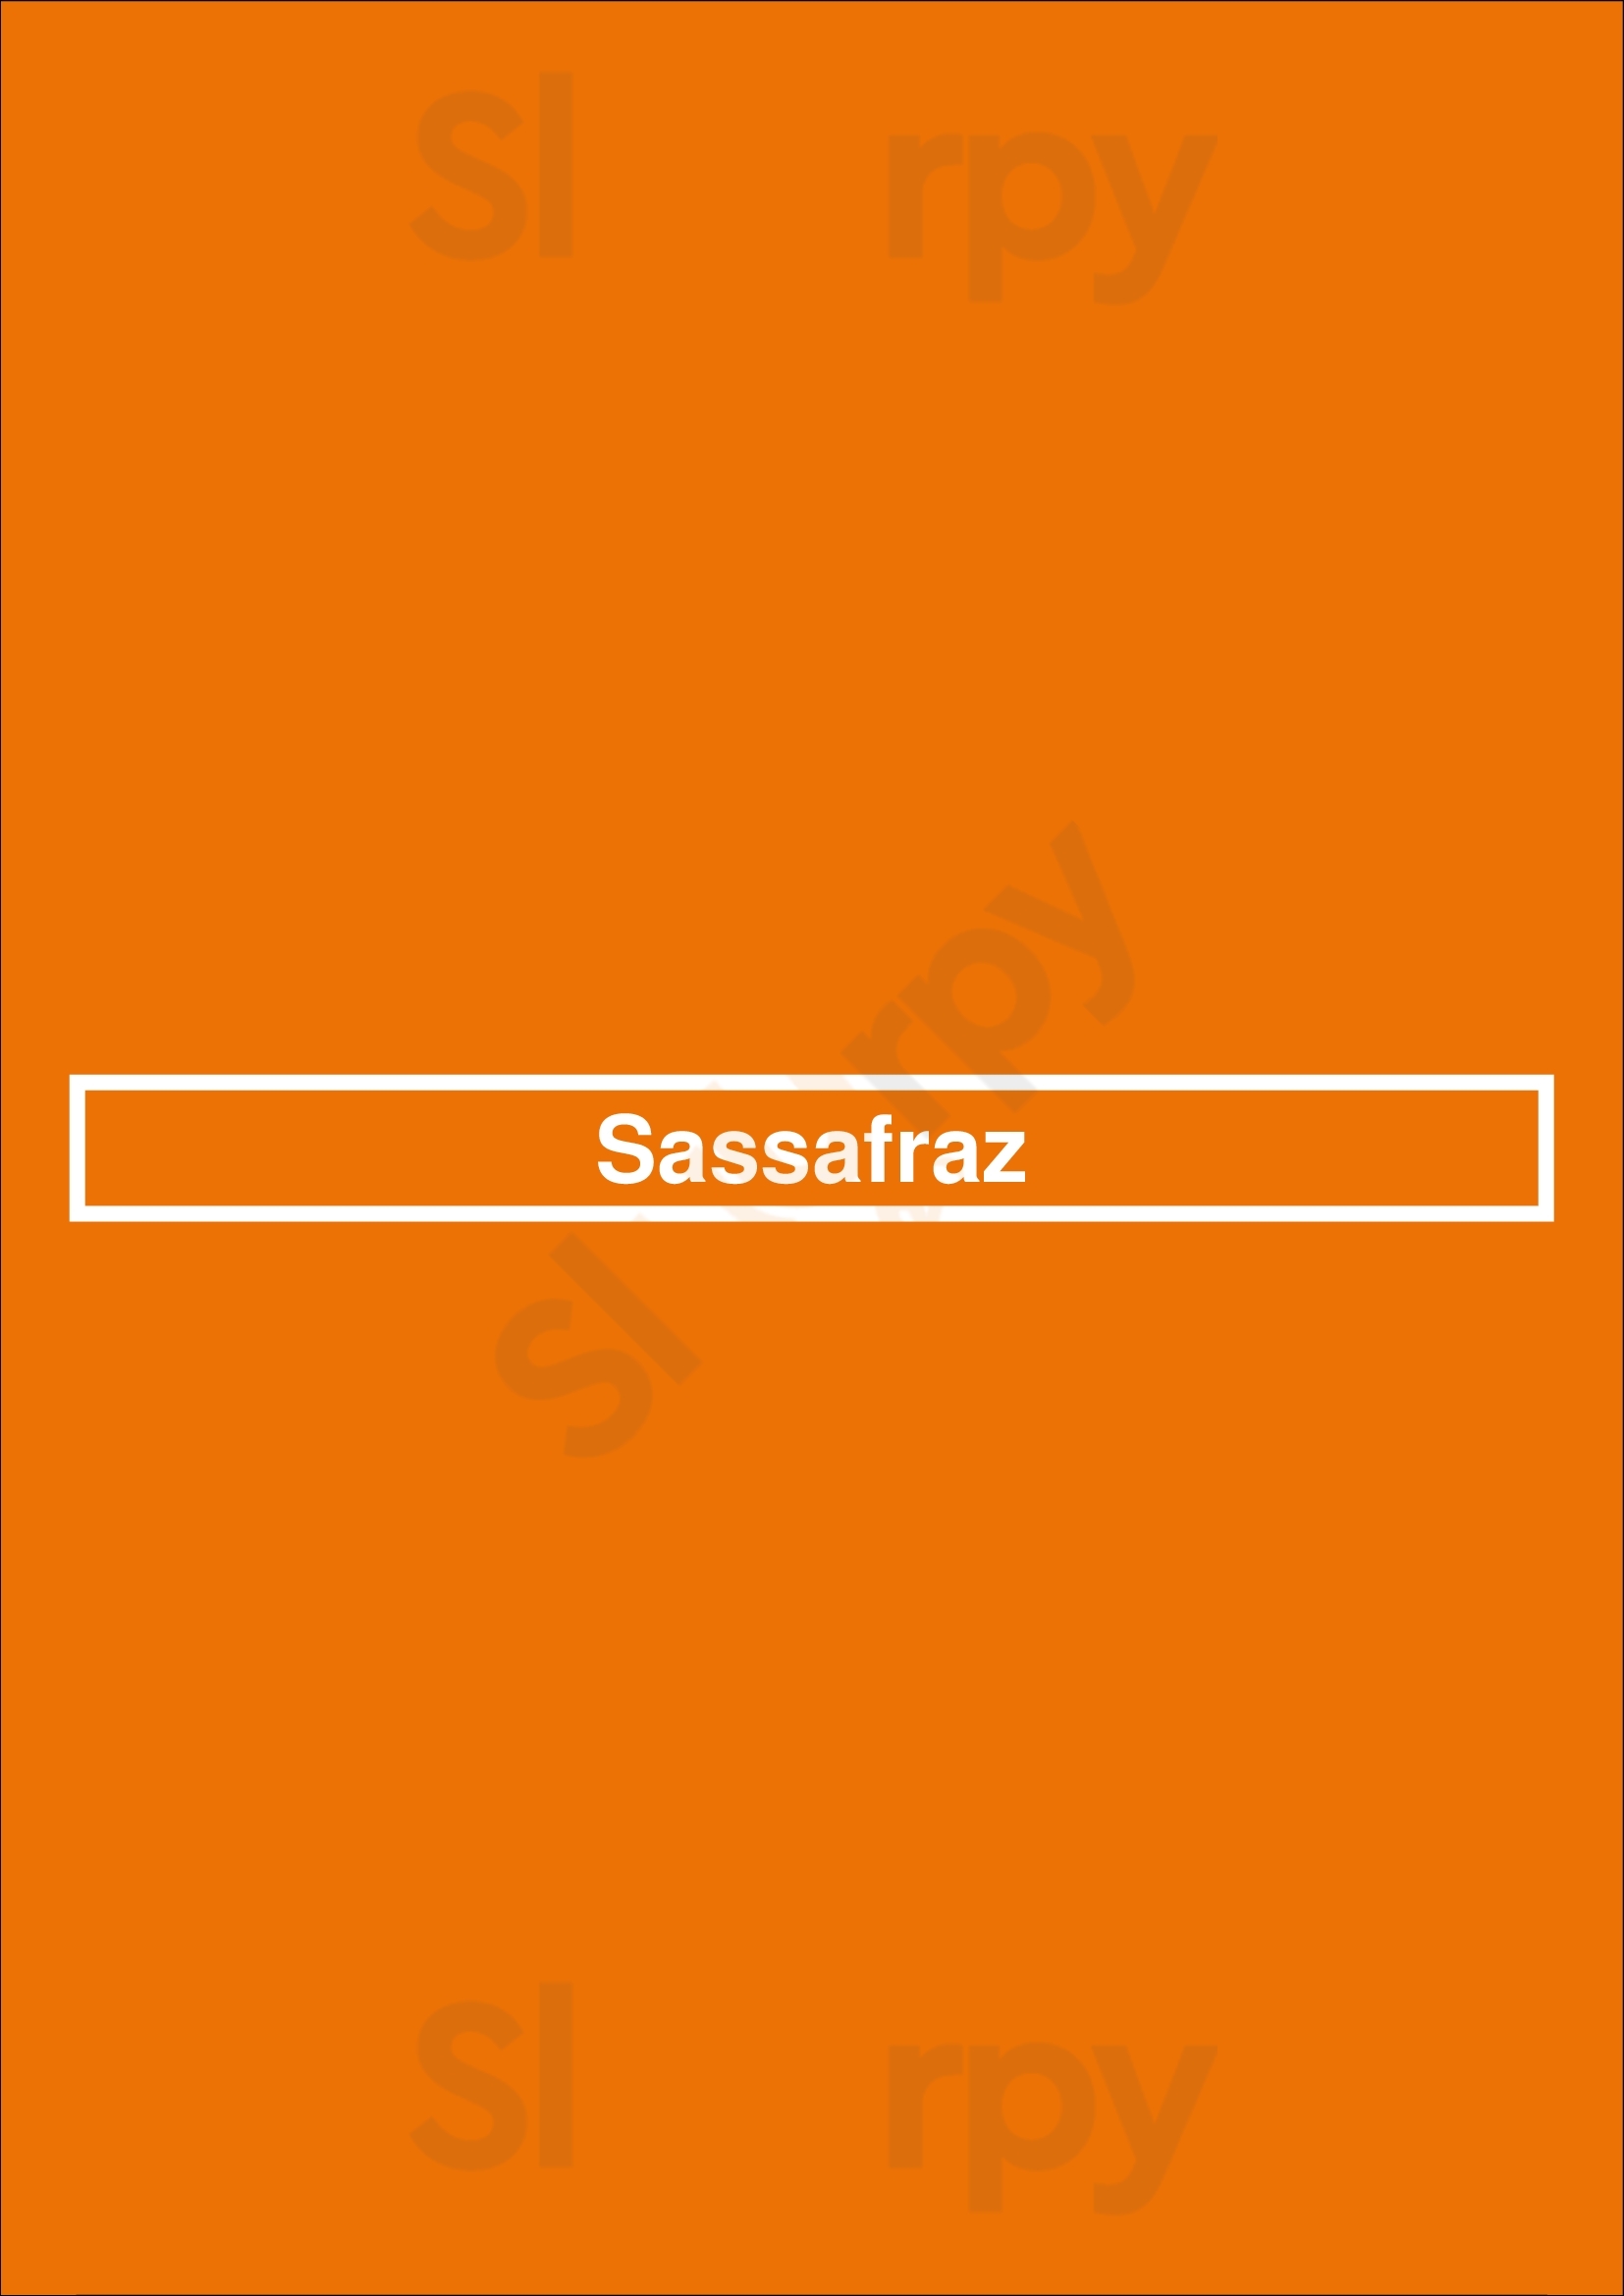 Sassafraz Toronto Menu - 1